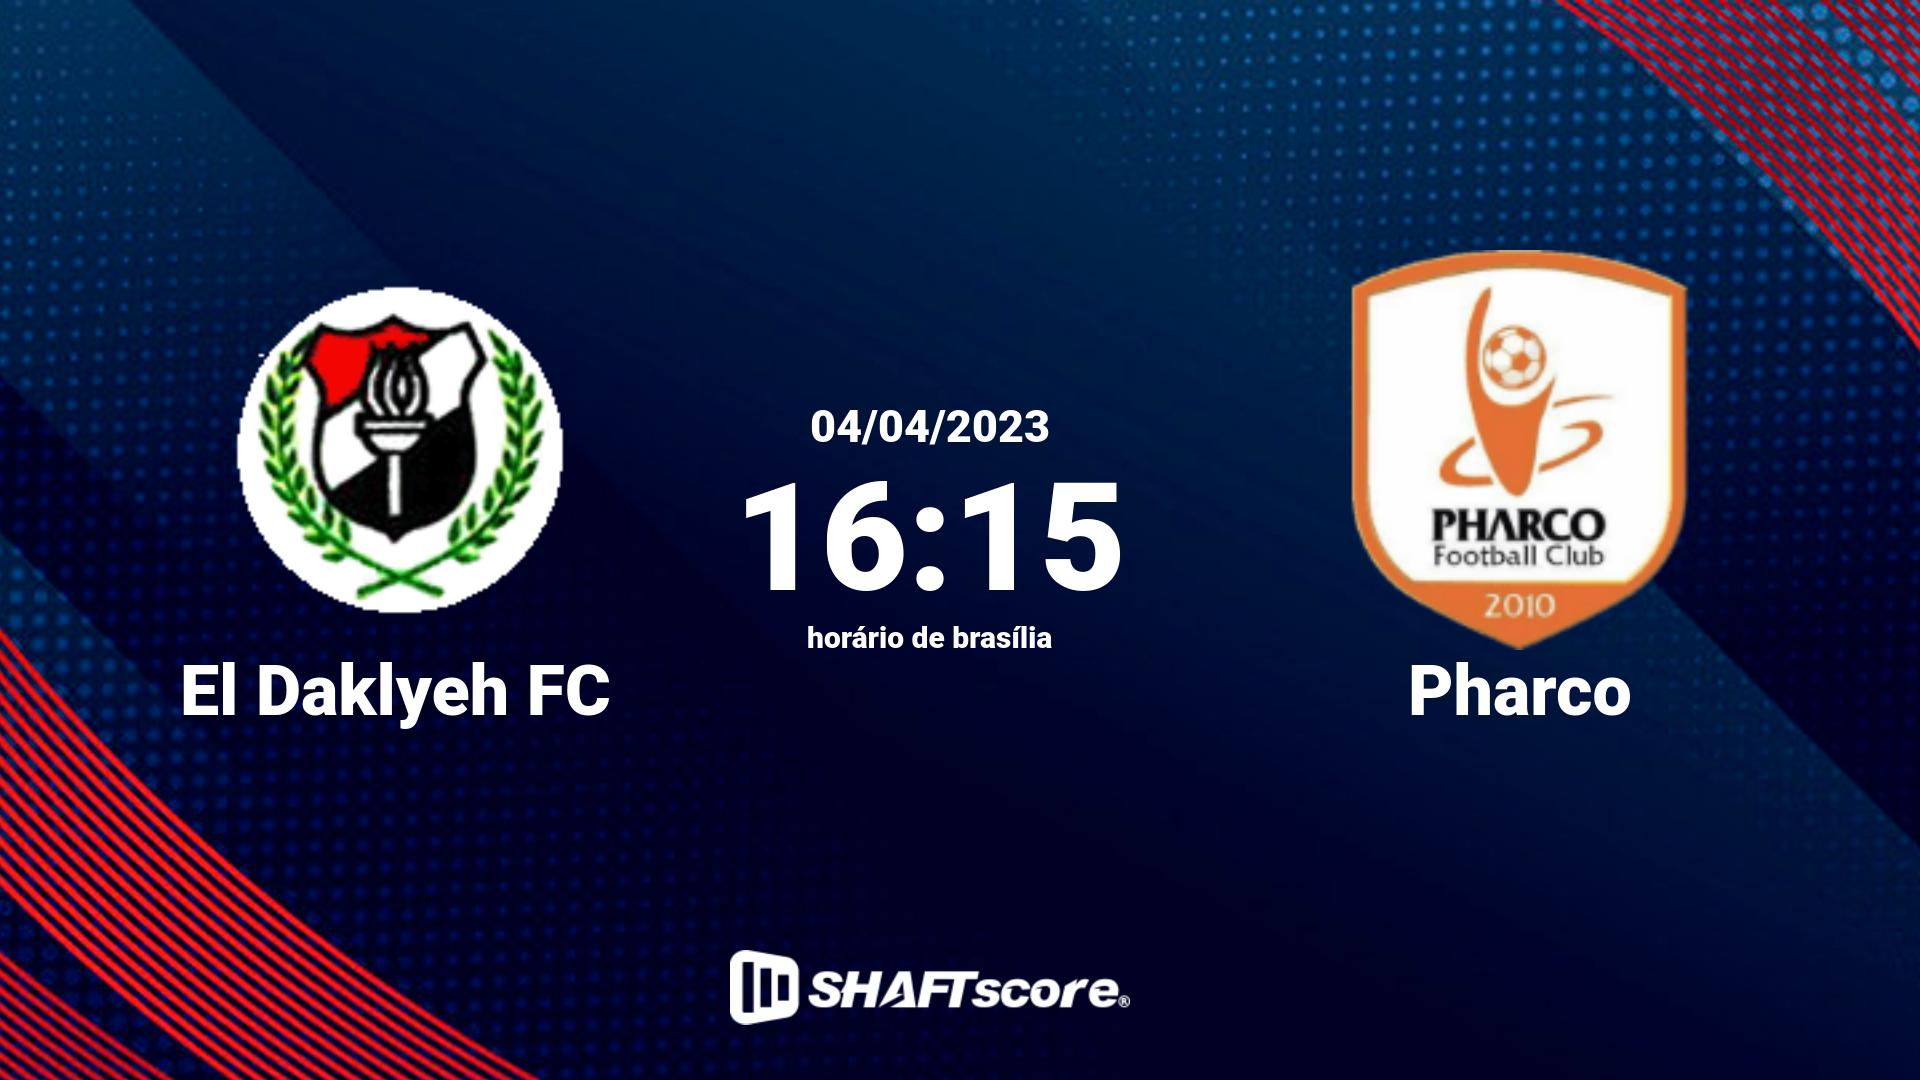 Estatísticas do jogo El Daklyeh FC vs Pharco 04.04 16:15